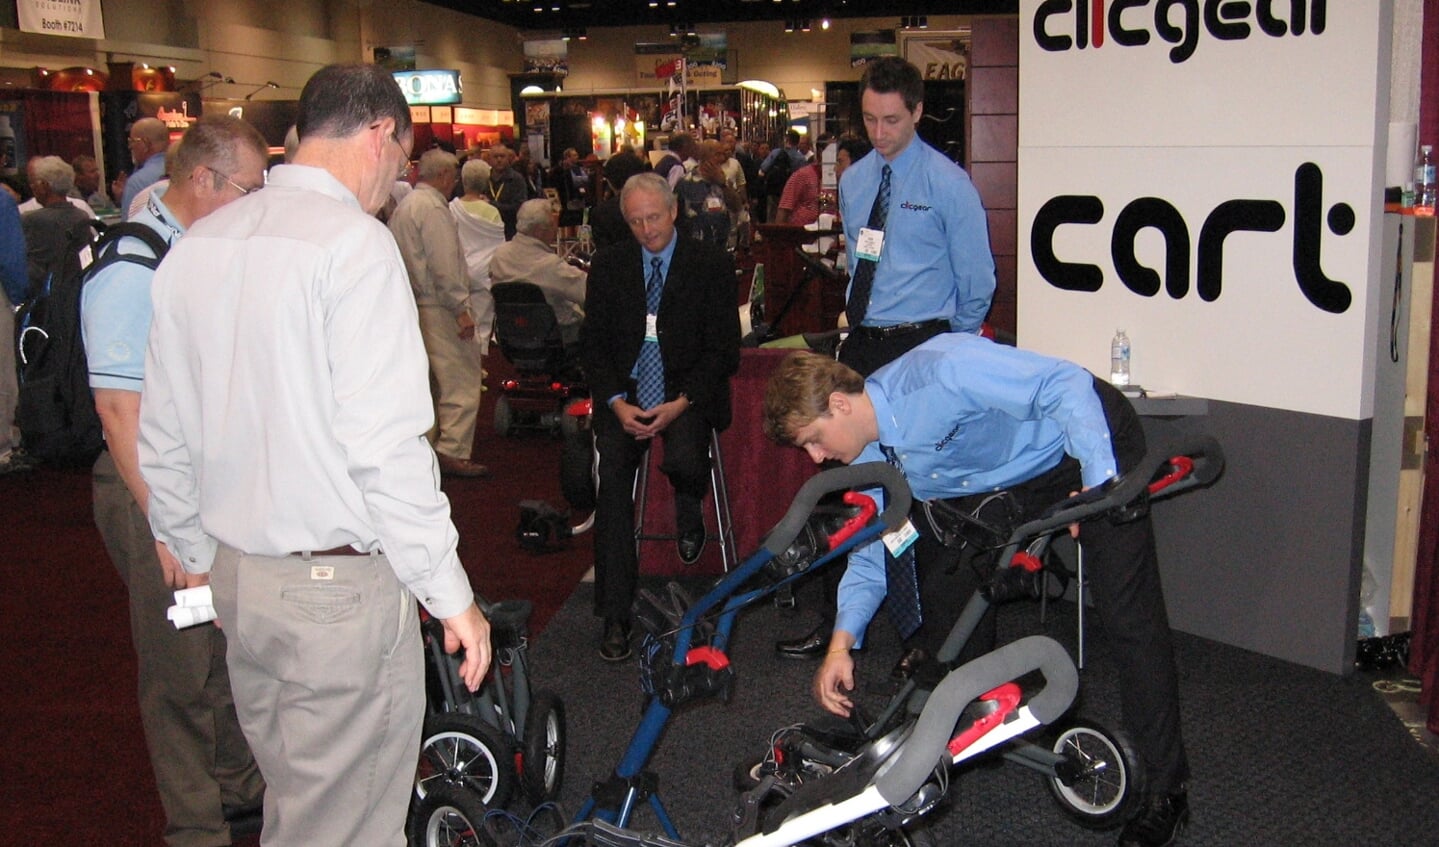 Presentatie van de eerste versie tijdens de PGA Show van 2006.